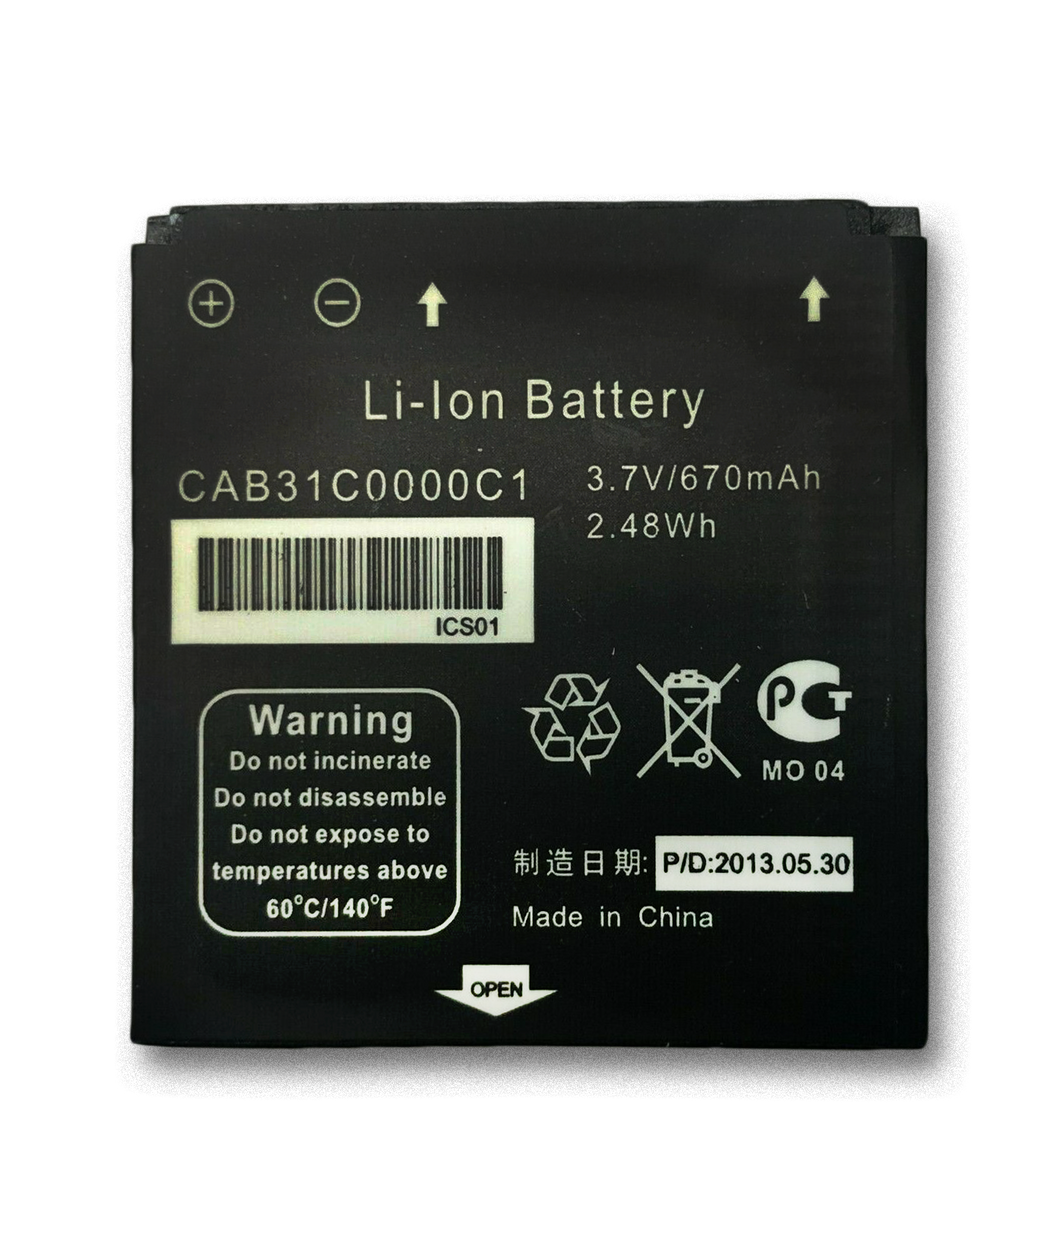 Replacement Battery for Alcatel OT-606, OT-606 Sparq, OT-606A, OT-606C, T-Mobile Spark